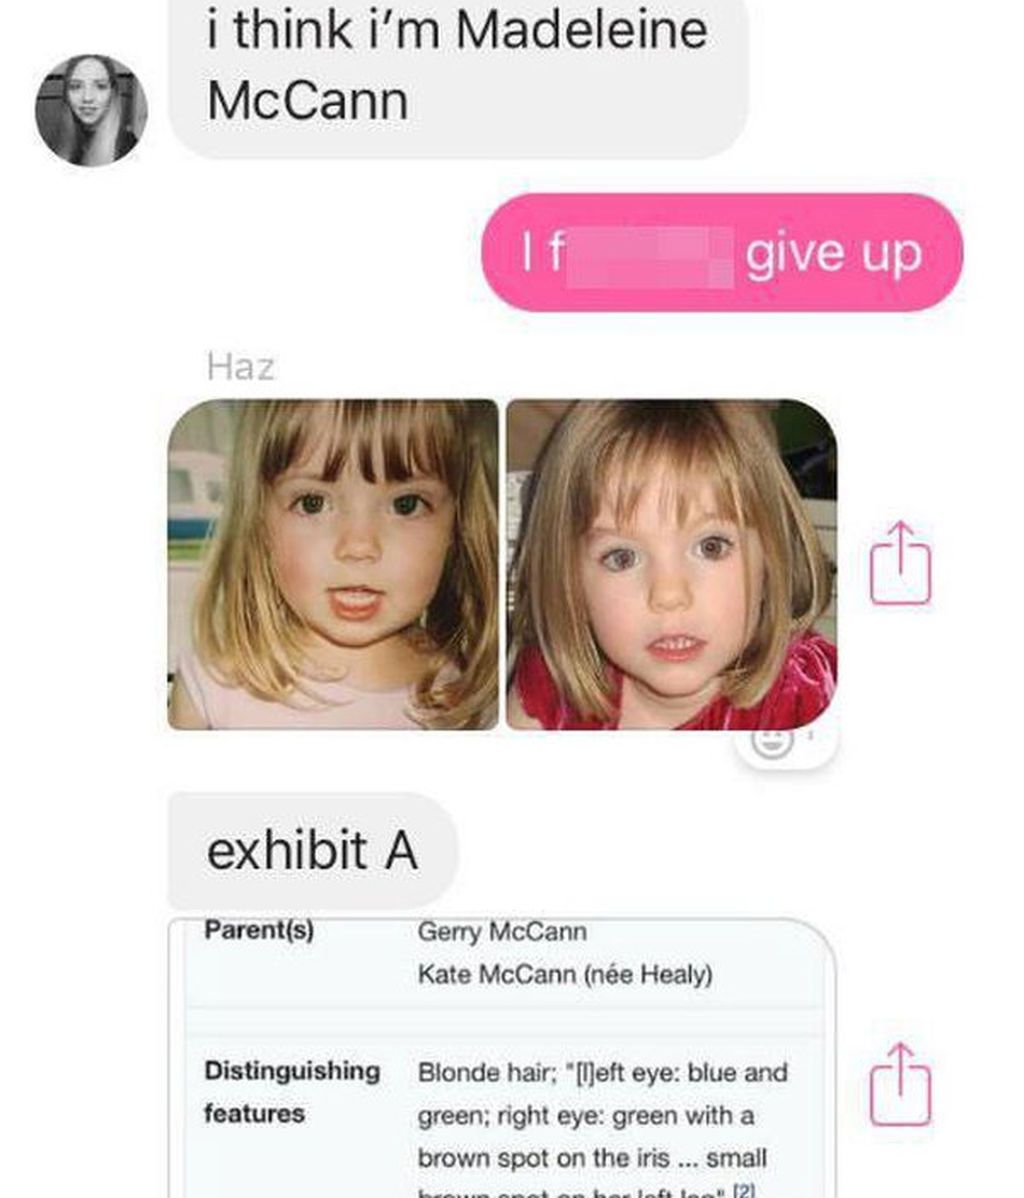 La desagradable broma de una joven: "Soy Madeleine McCann"